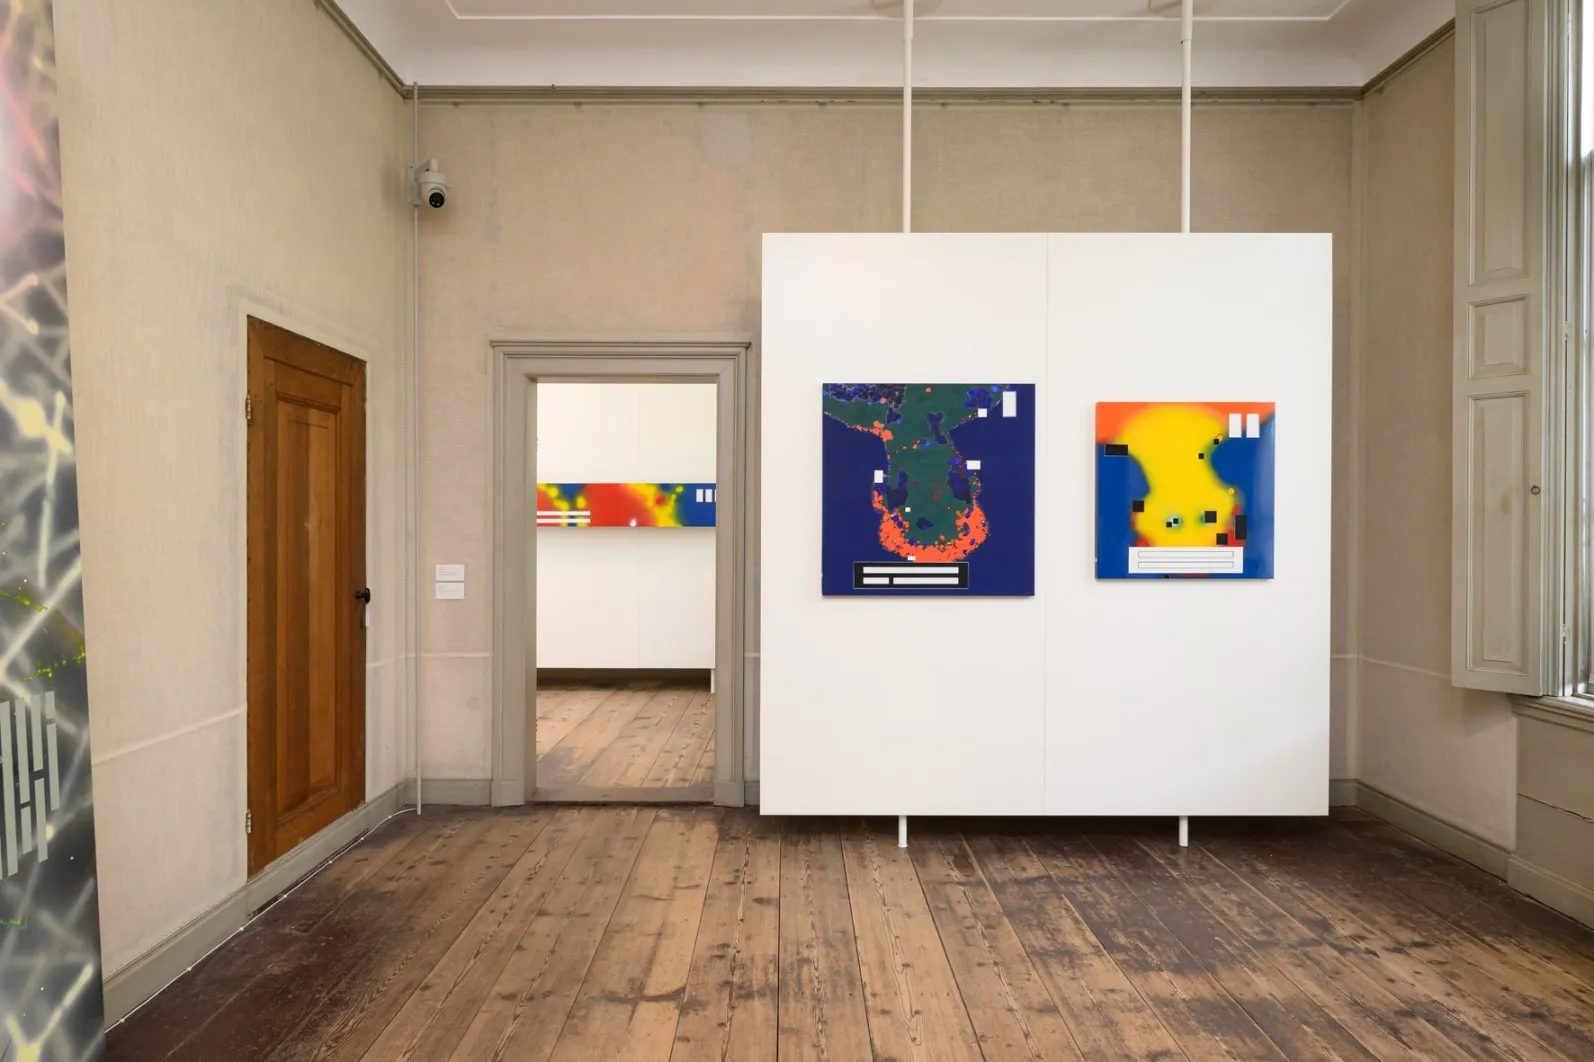 Twee kunstwerken die de uitstraling van thermische beelden oproepen in de tentoonstellingsruimte.